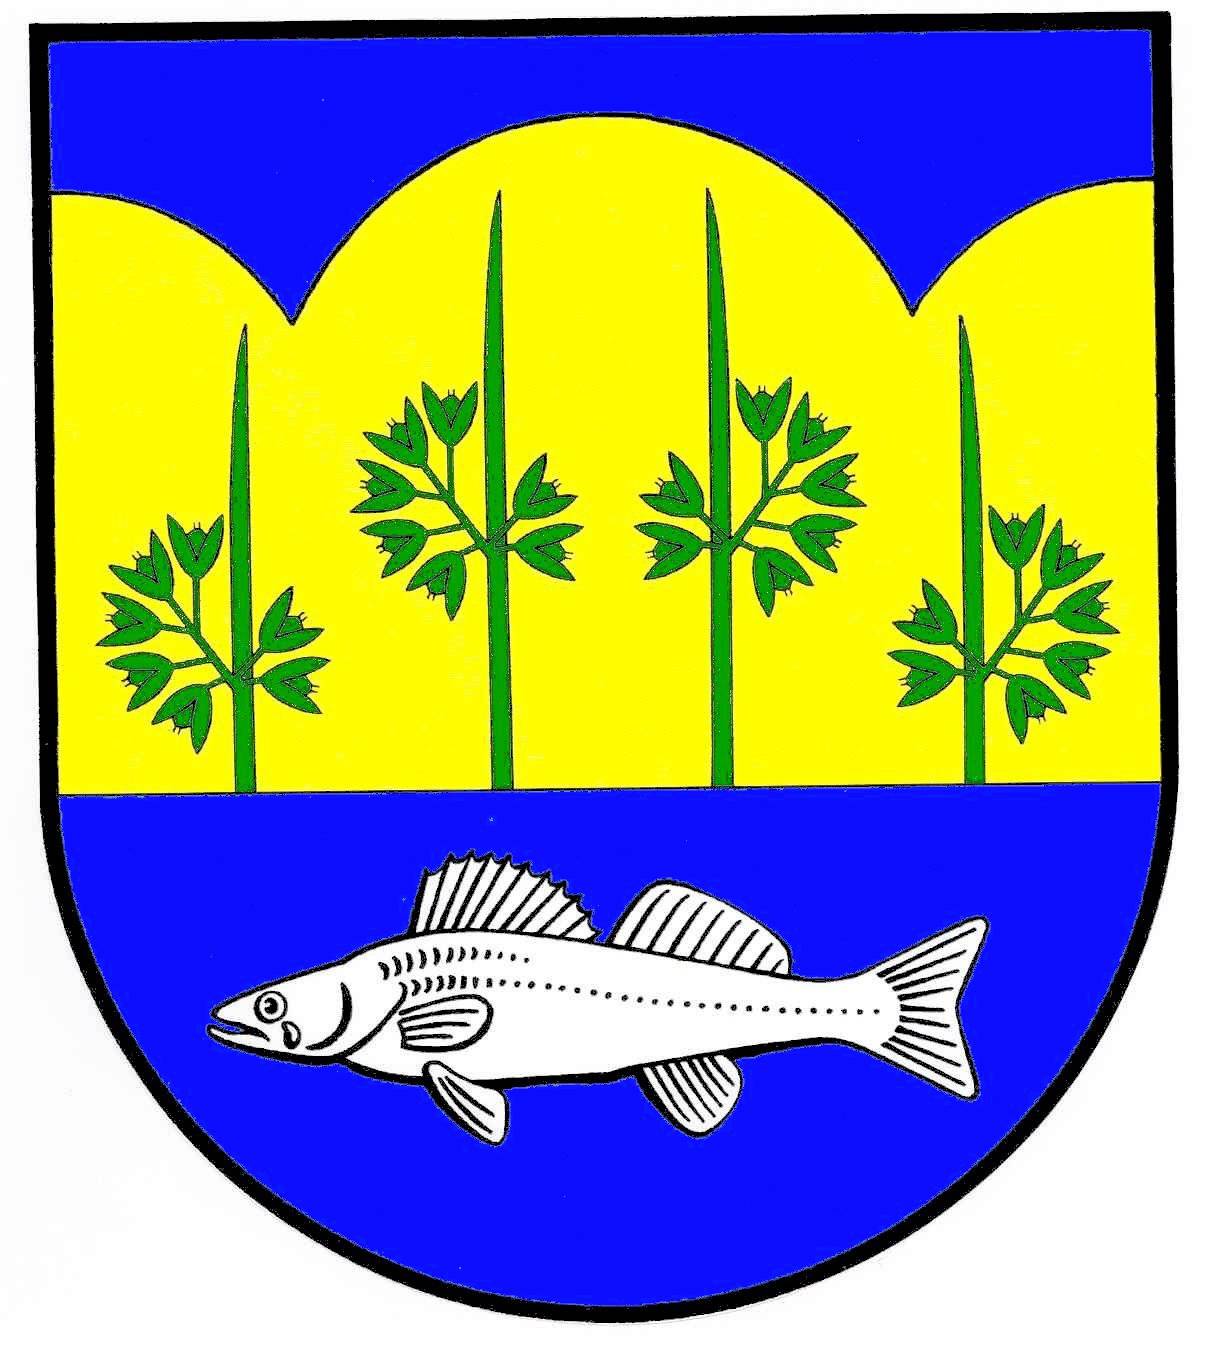 Wappen Gemeinde Ahlefeld-Bistensee, Kreis Rendsburg-Eckernförde